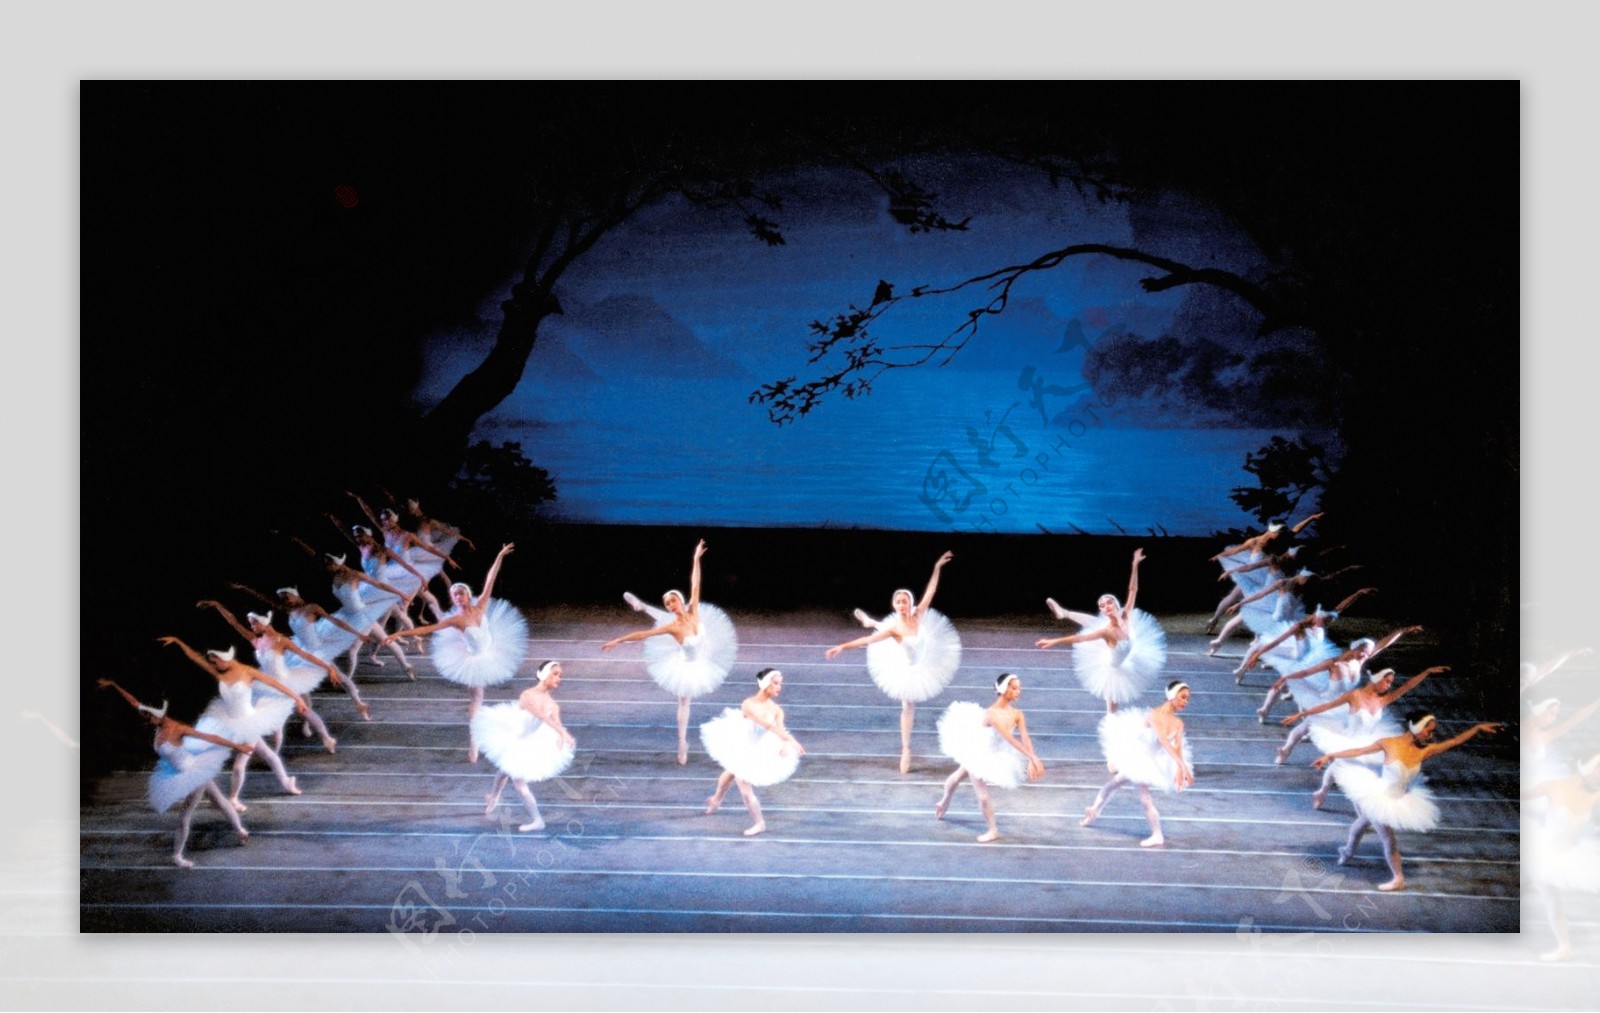 芭蕾舞天鹅湖图片